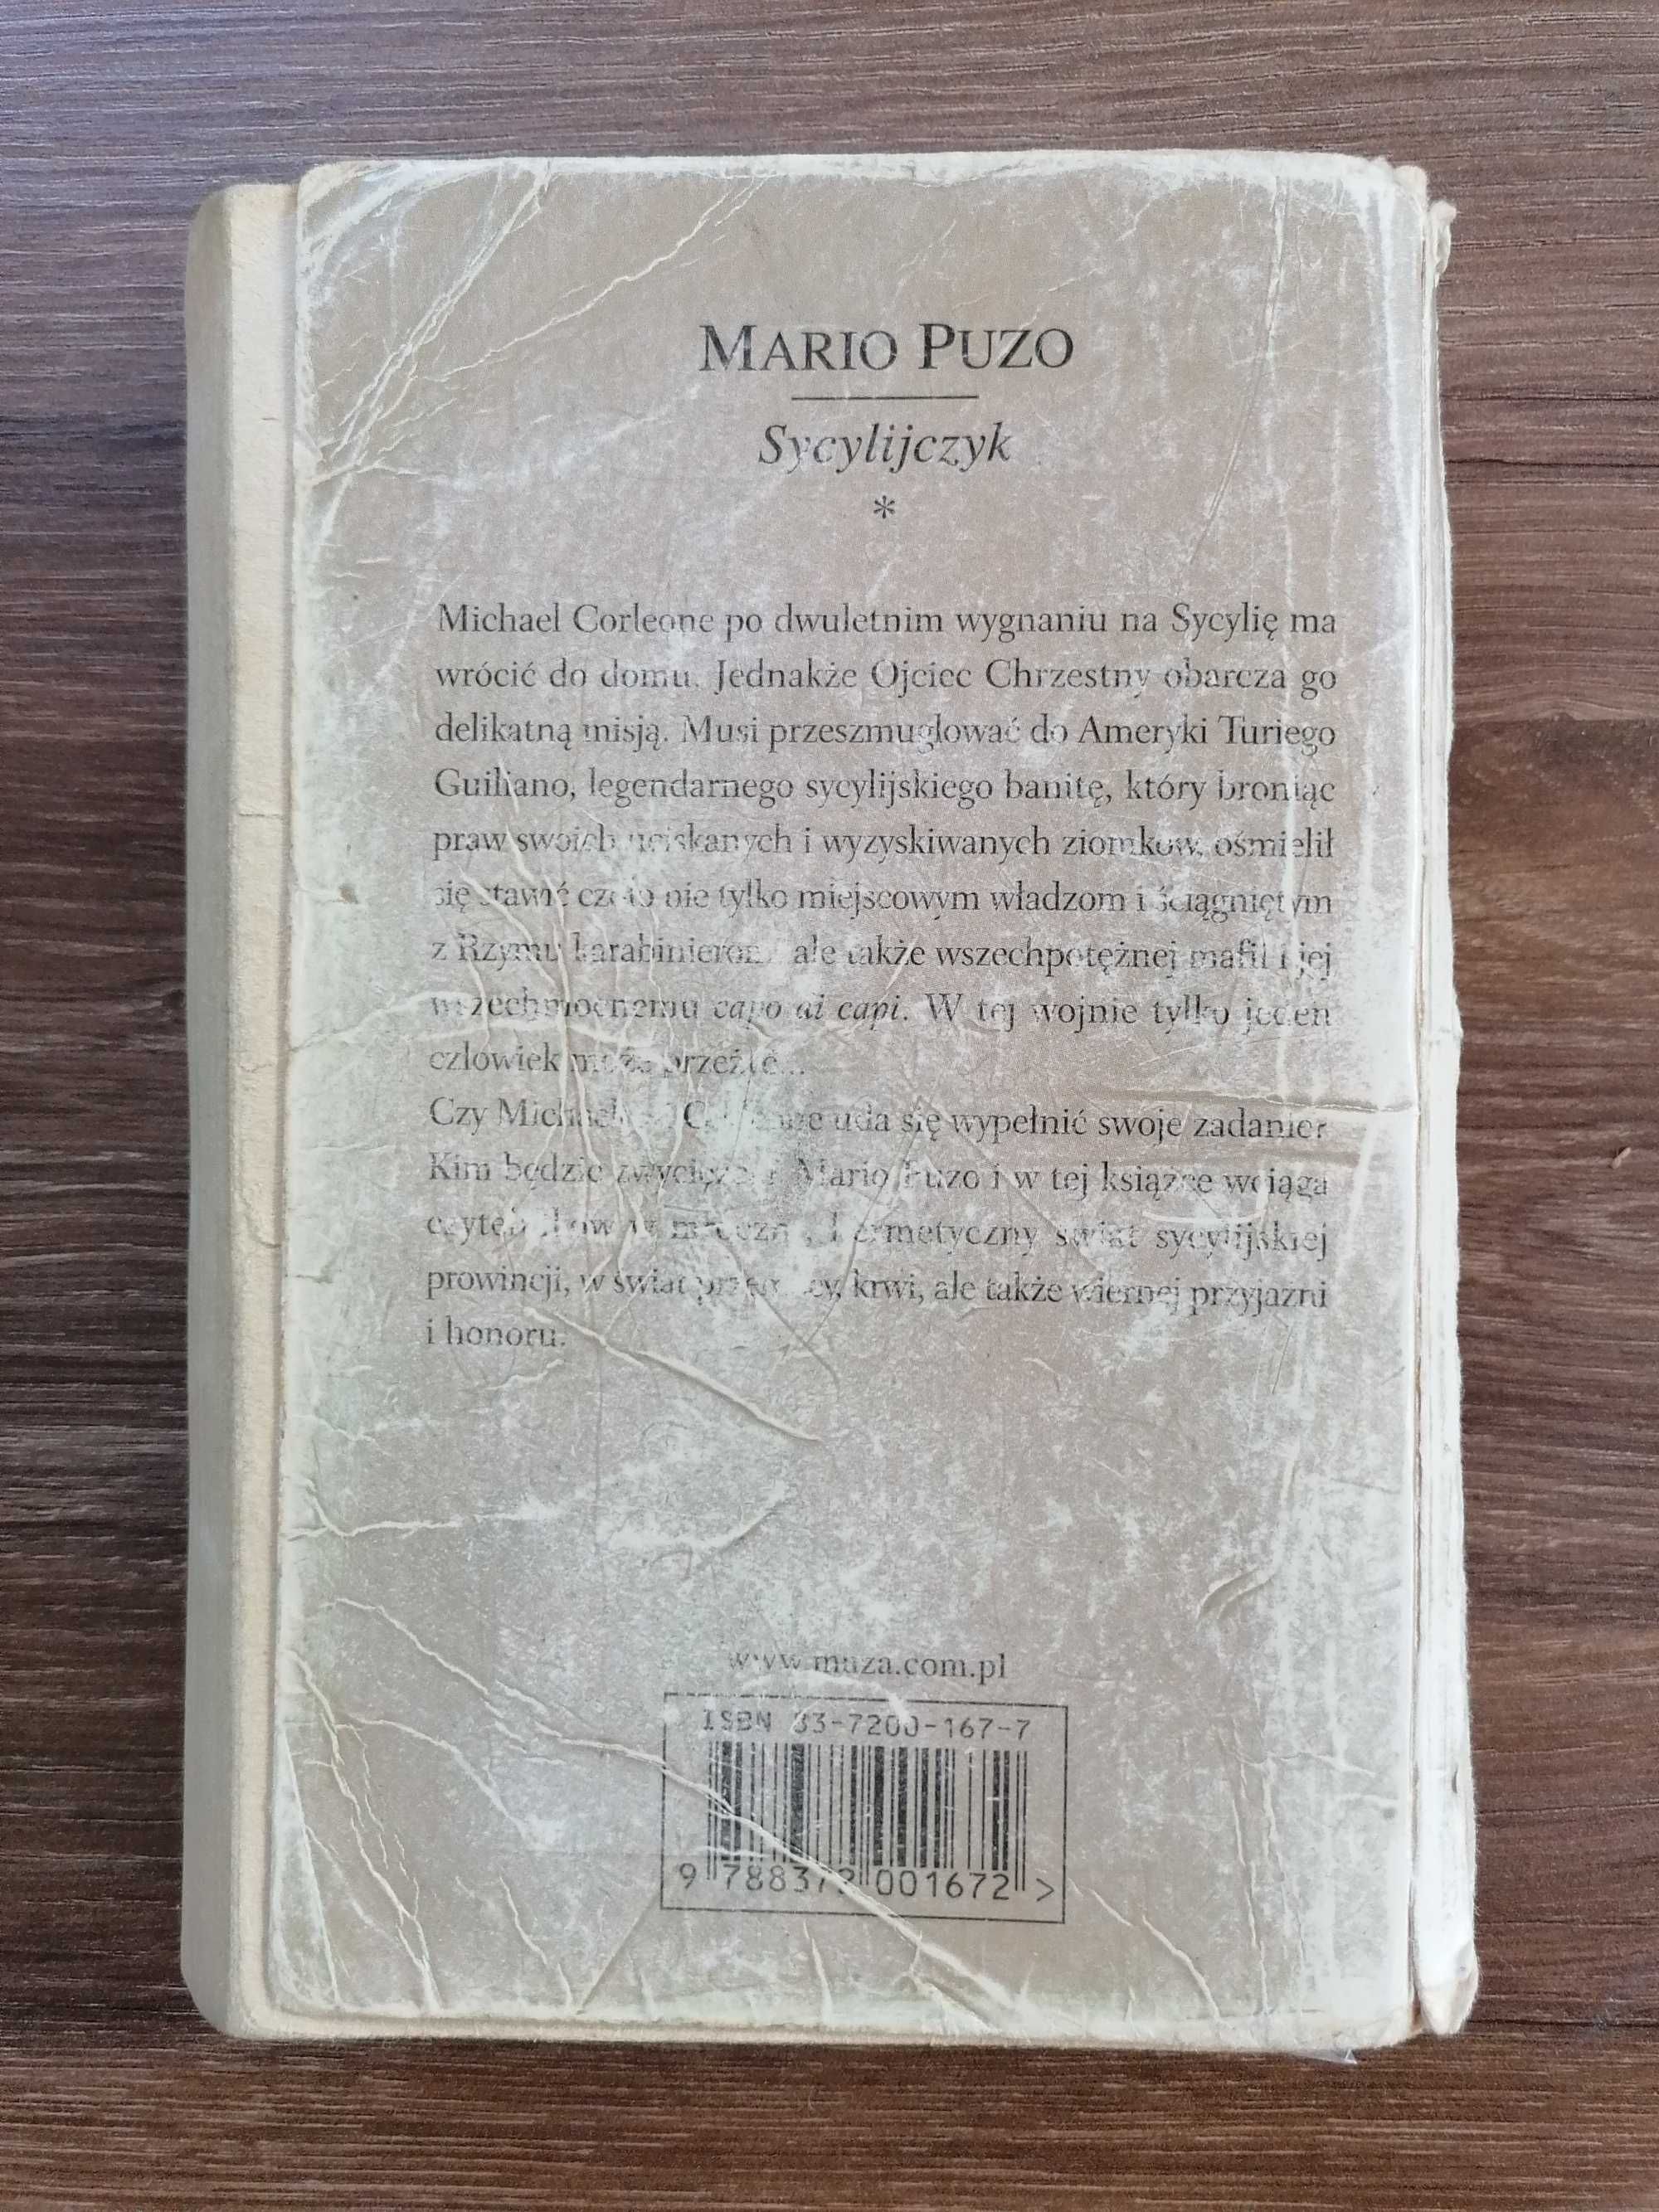 Mario Puzo - "Sycylijczyk"